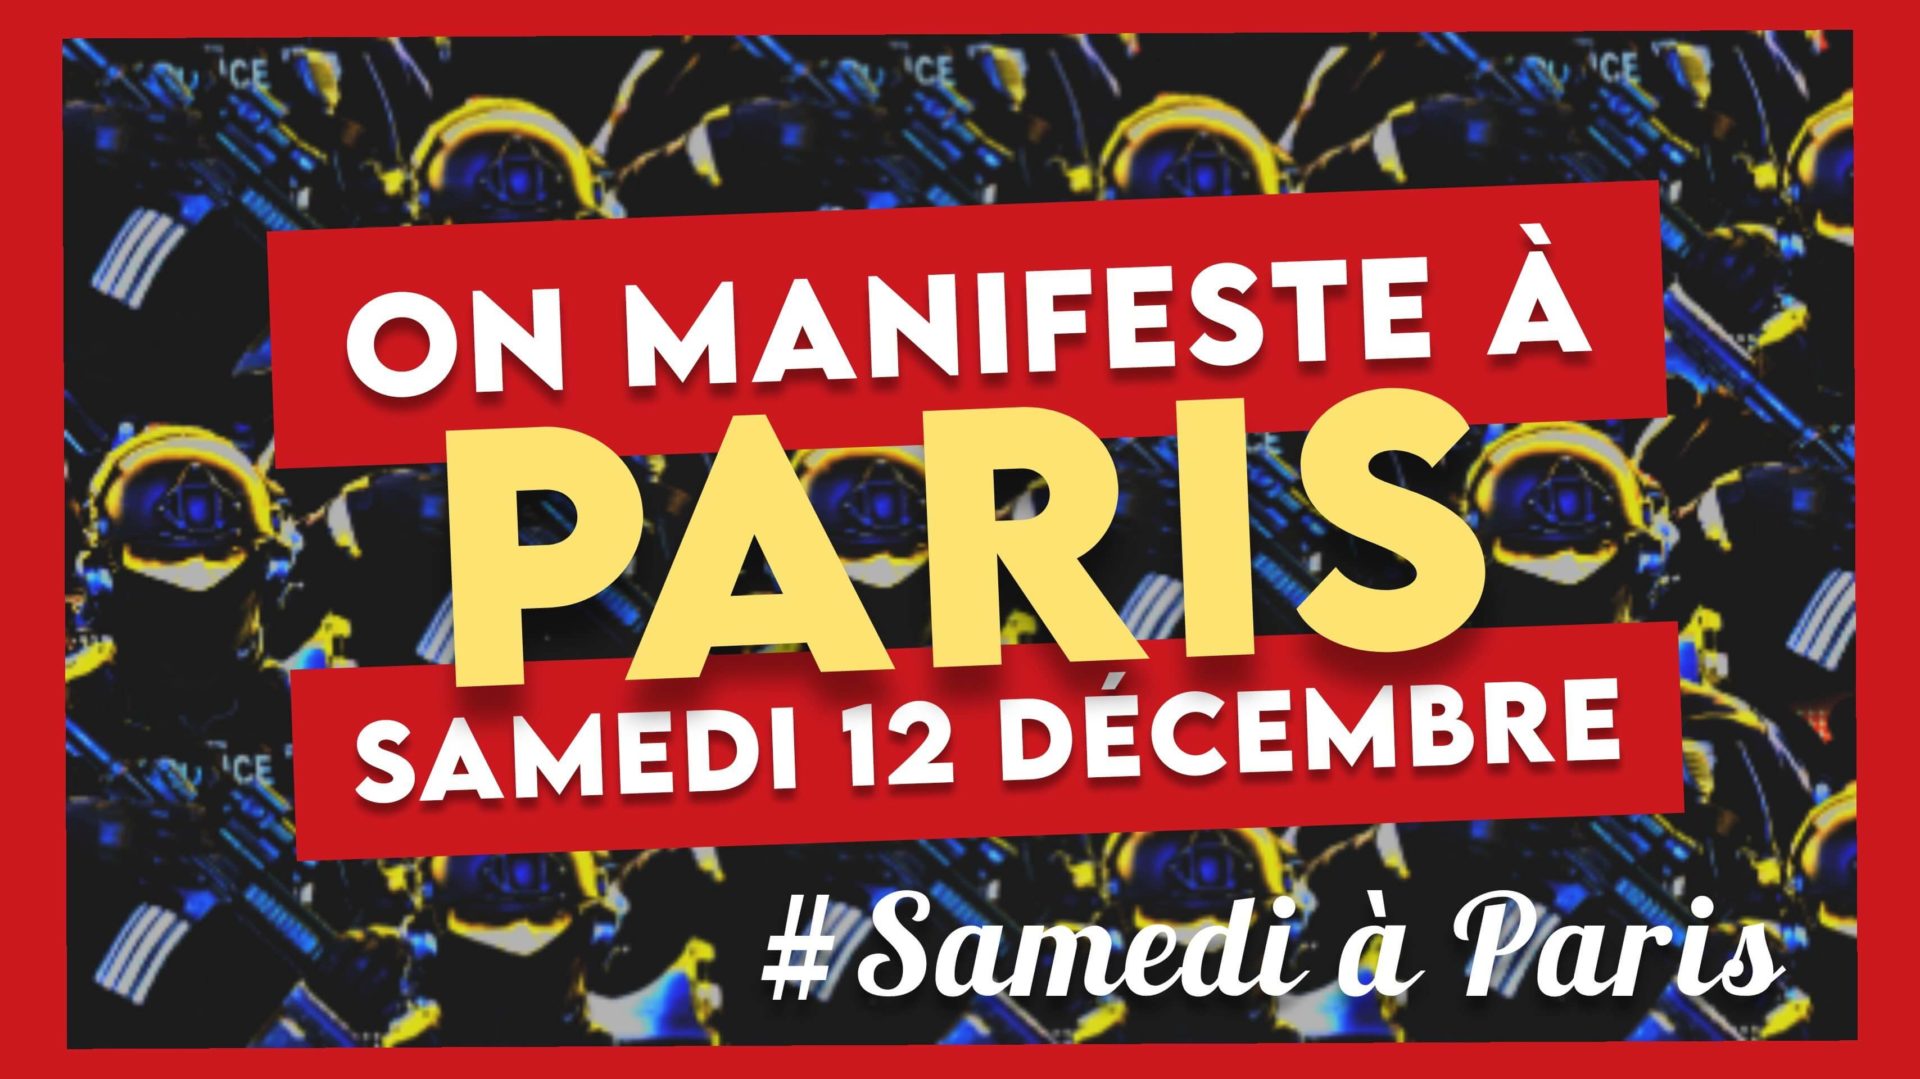 Manifestation samedi 12 décembre Paris